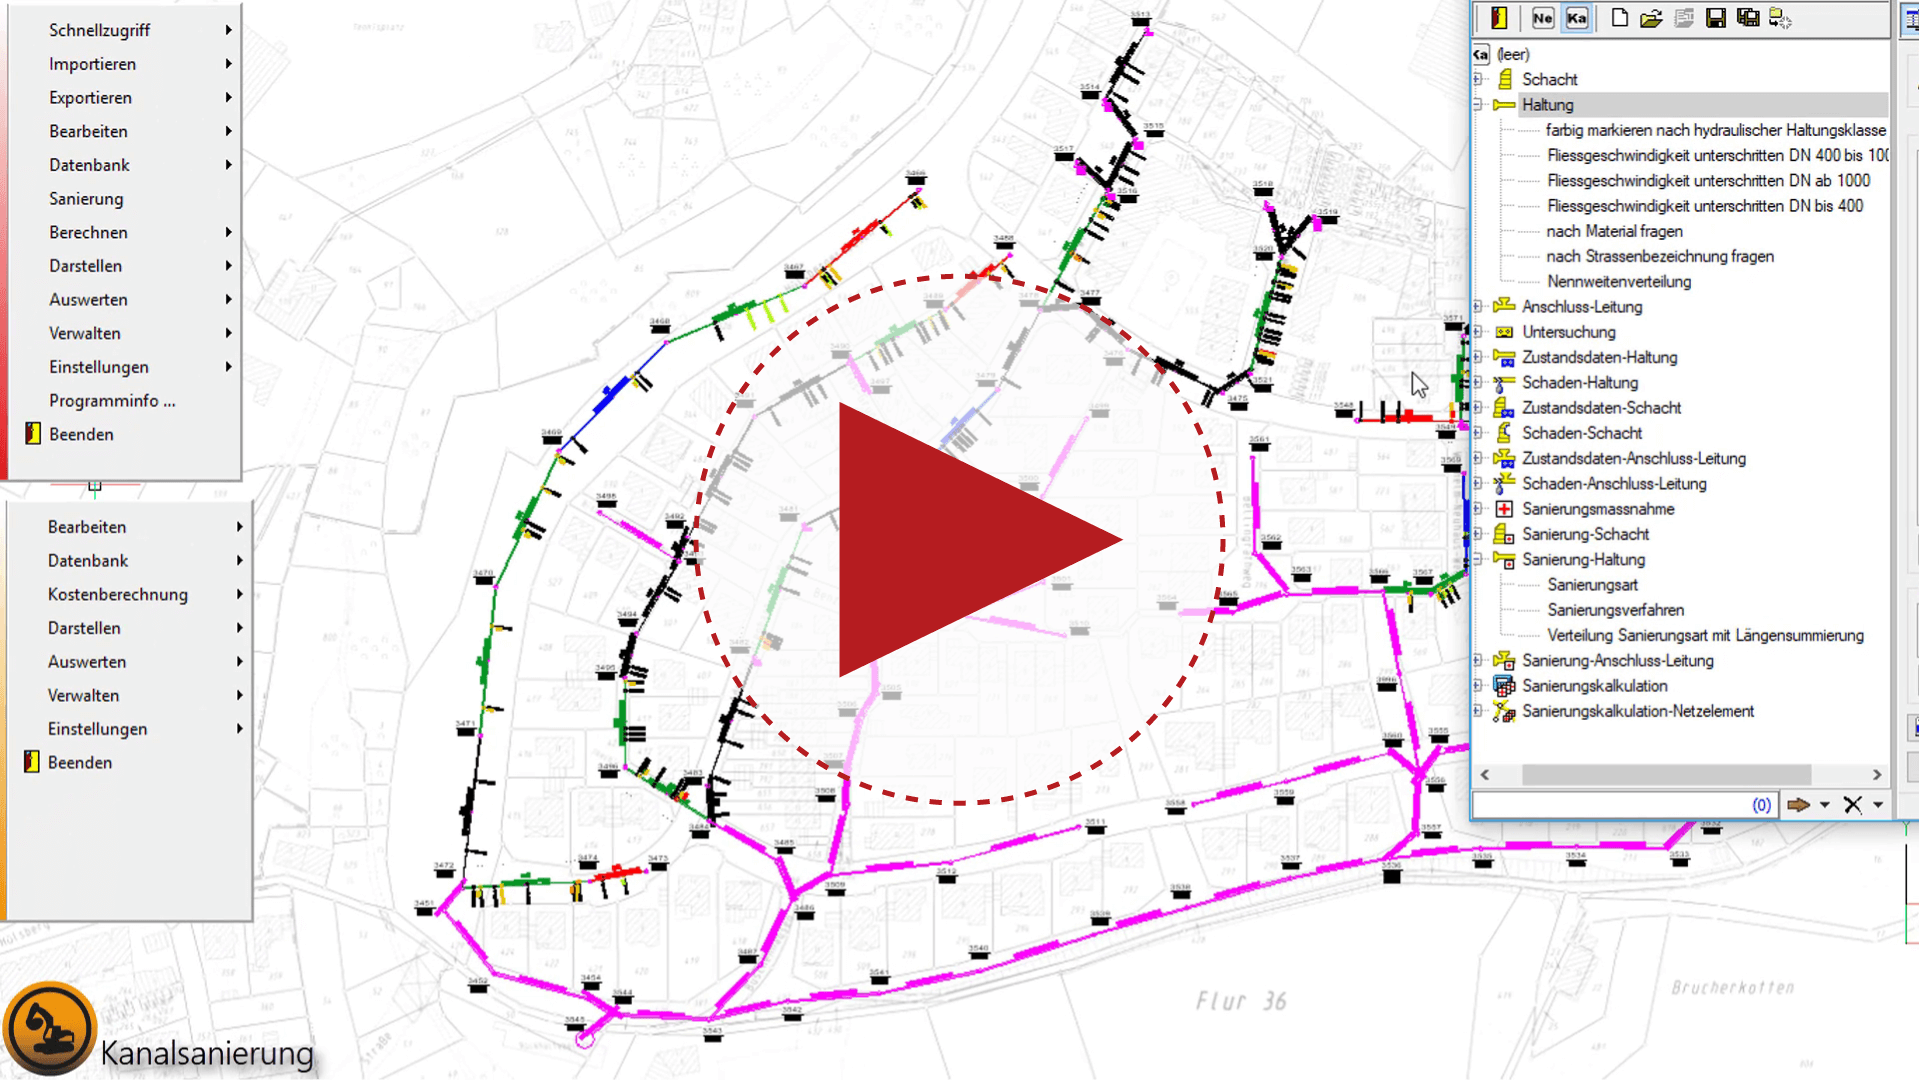 Video: cseTools Kanalsanierung, Erstellen einer thematischen Karte nach Sanierungsart